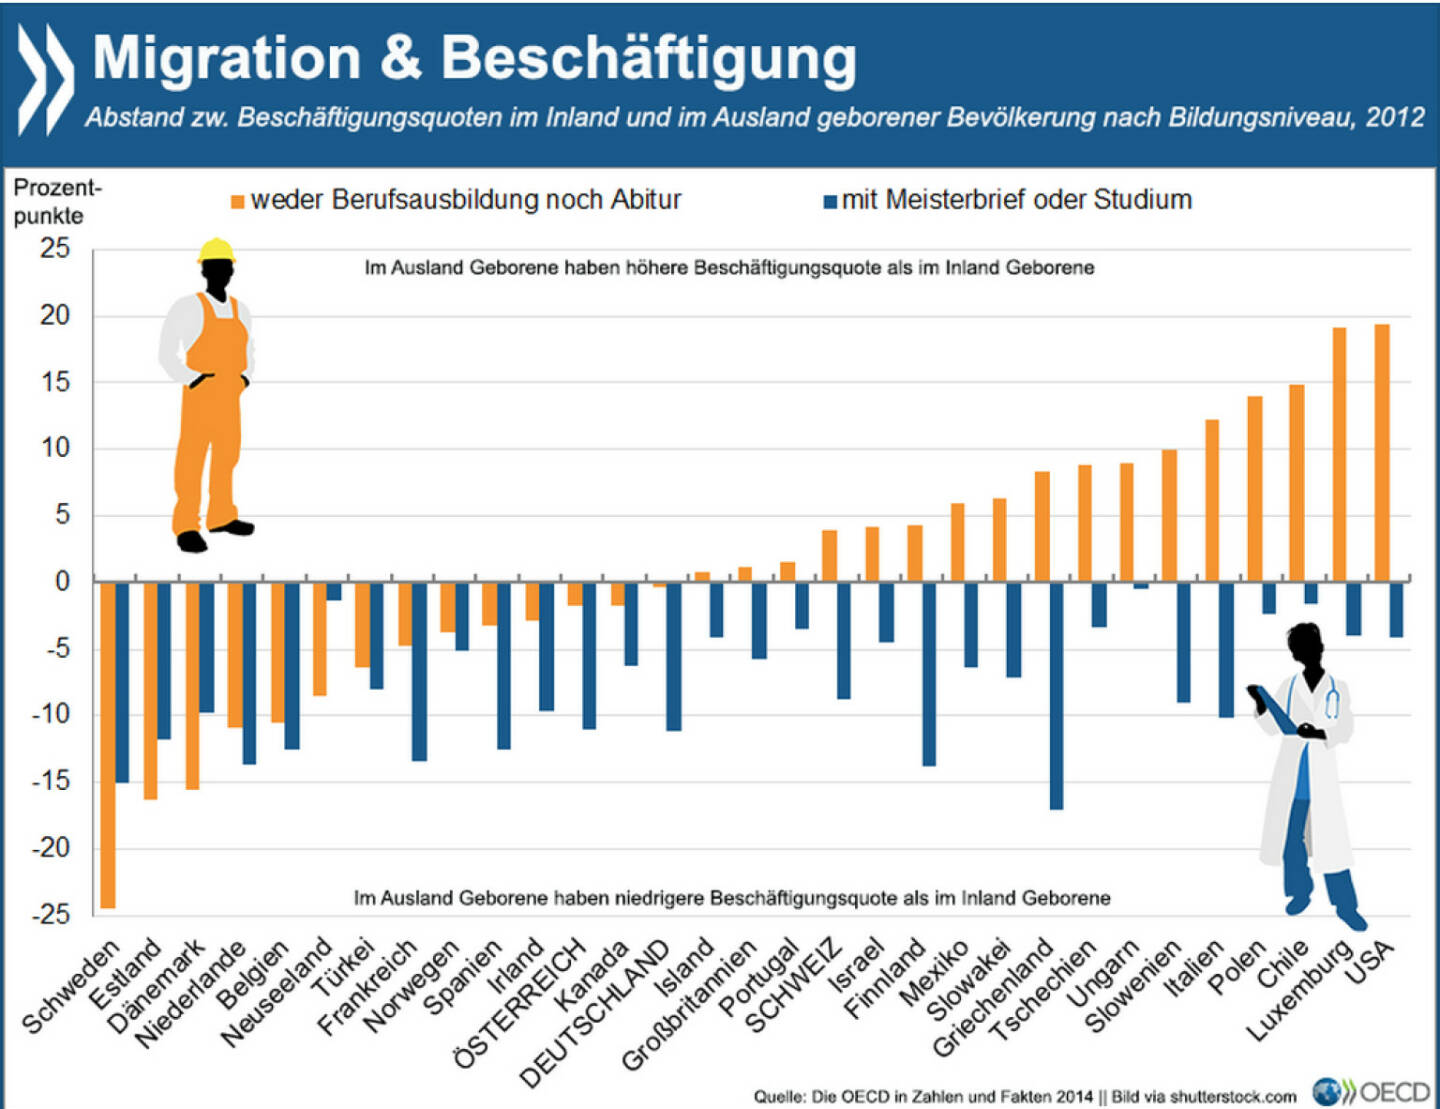 Türöffner Bildung? Zuwanderer mit verhältnismäßig niedriger formaler Bildung sind in etwa der Hälfte der OECD-Länder eher in Arbeit als im Inland Geborene mit ähnlichen Schulabschlüssen. Für hochqualifizierte Einwanderer sieht es auf dem Arbeitsmarkt im Vergleich zu Einheimischen mit hoher Bildung überall schlechter aus.
Mehr Infos zum Thema findet Ihr unter: http://bit.ly/1CcePWb (S. 29)